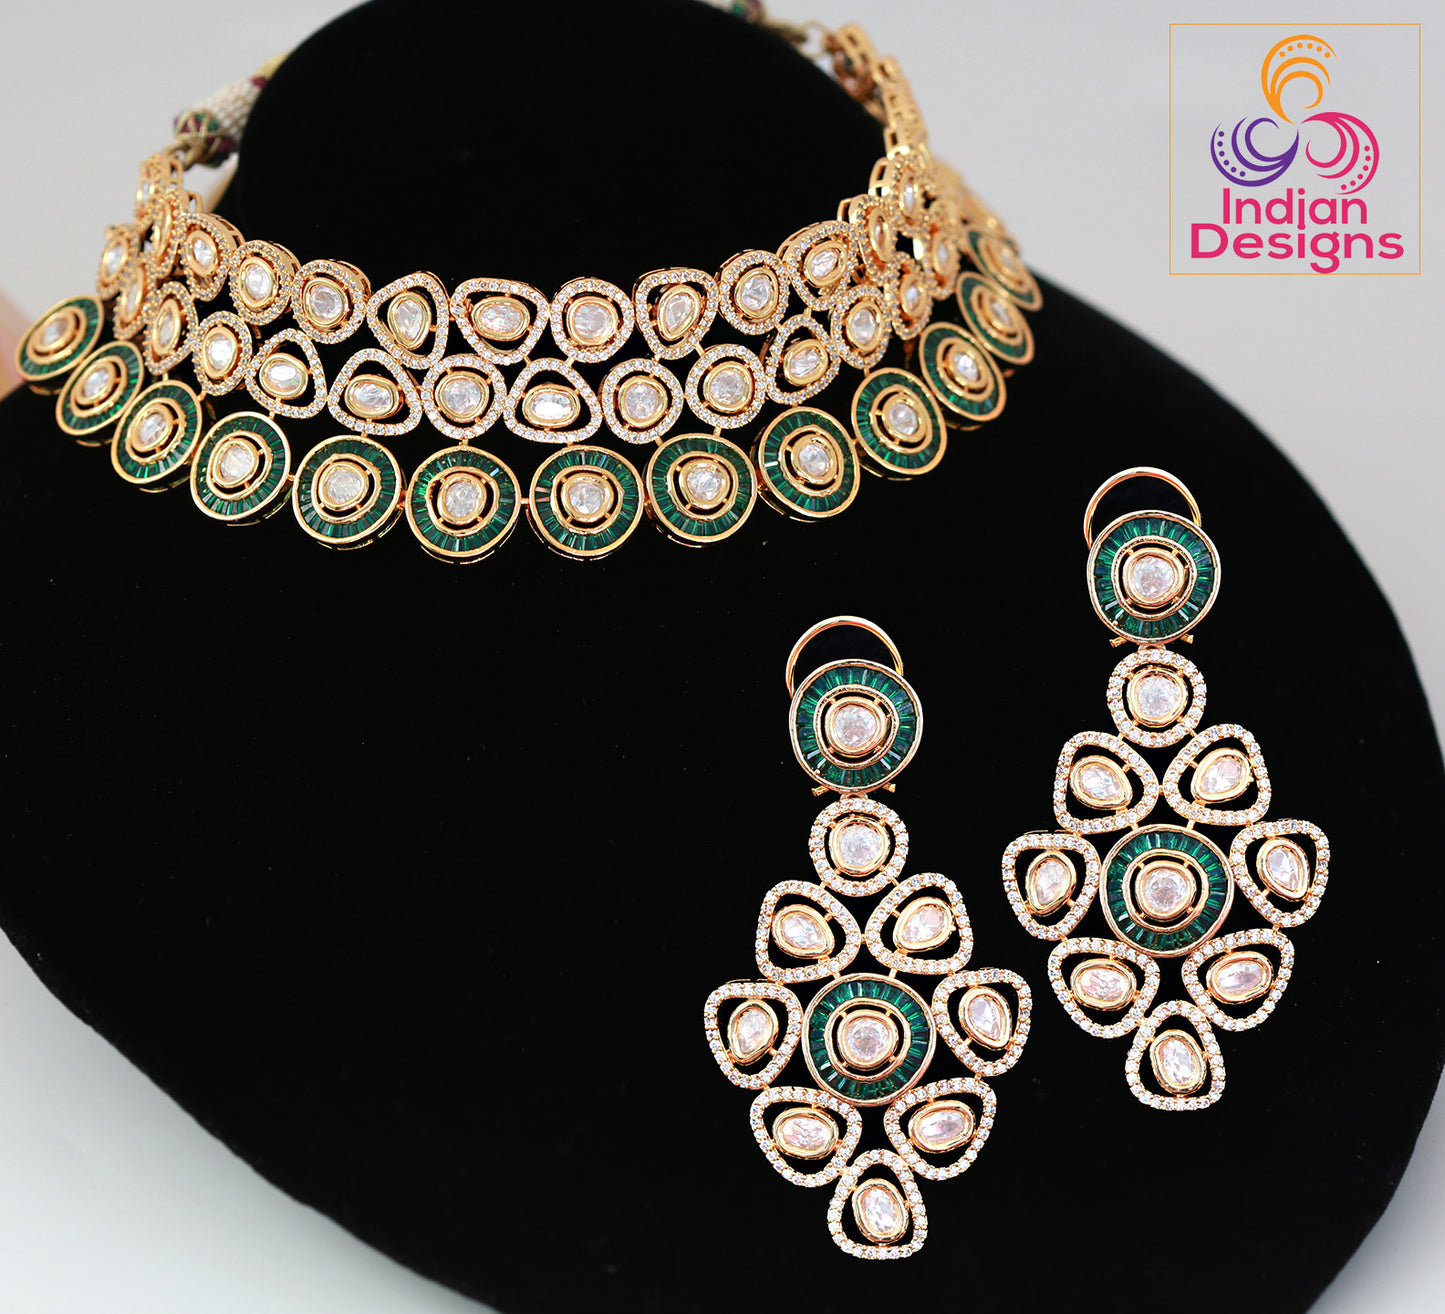 American diamond choker set | Kundan Choker Necklace Earring Set | Indian Jewelry Bridal Wedding Necklace | bollywood style choker necklace